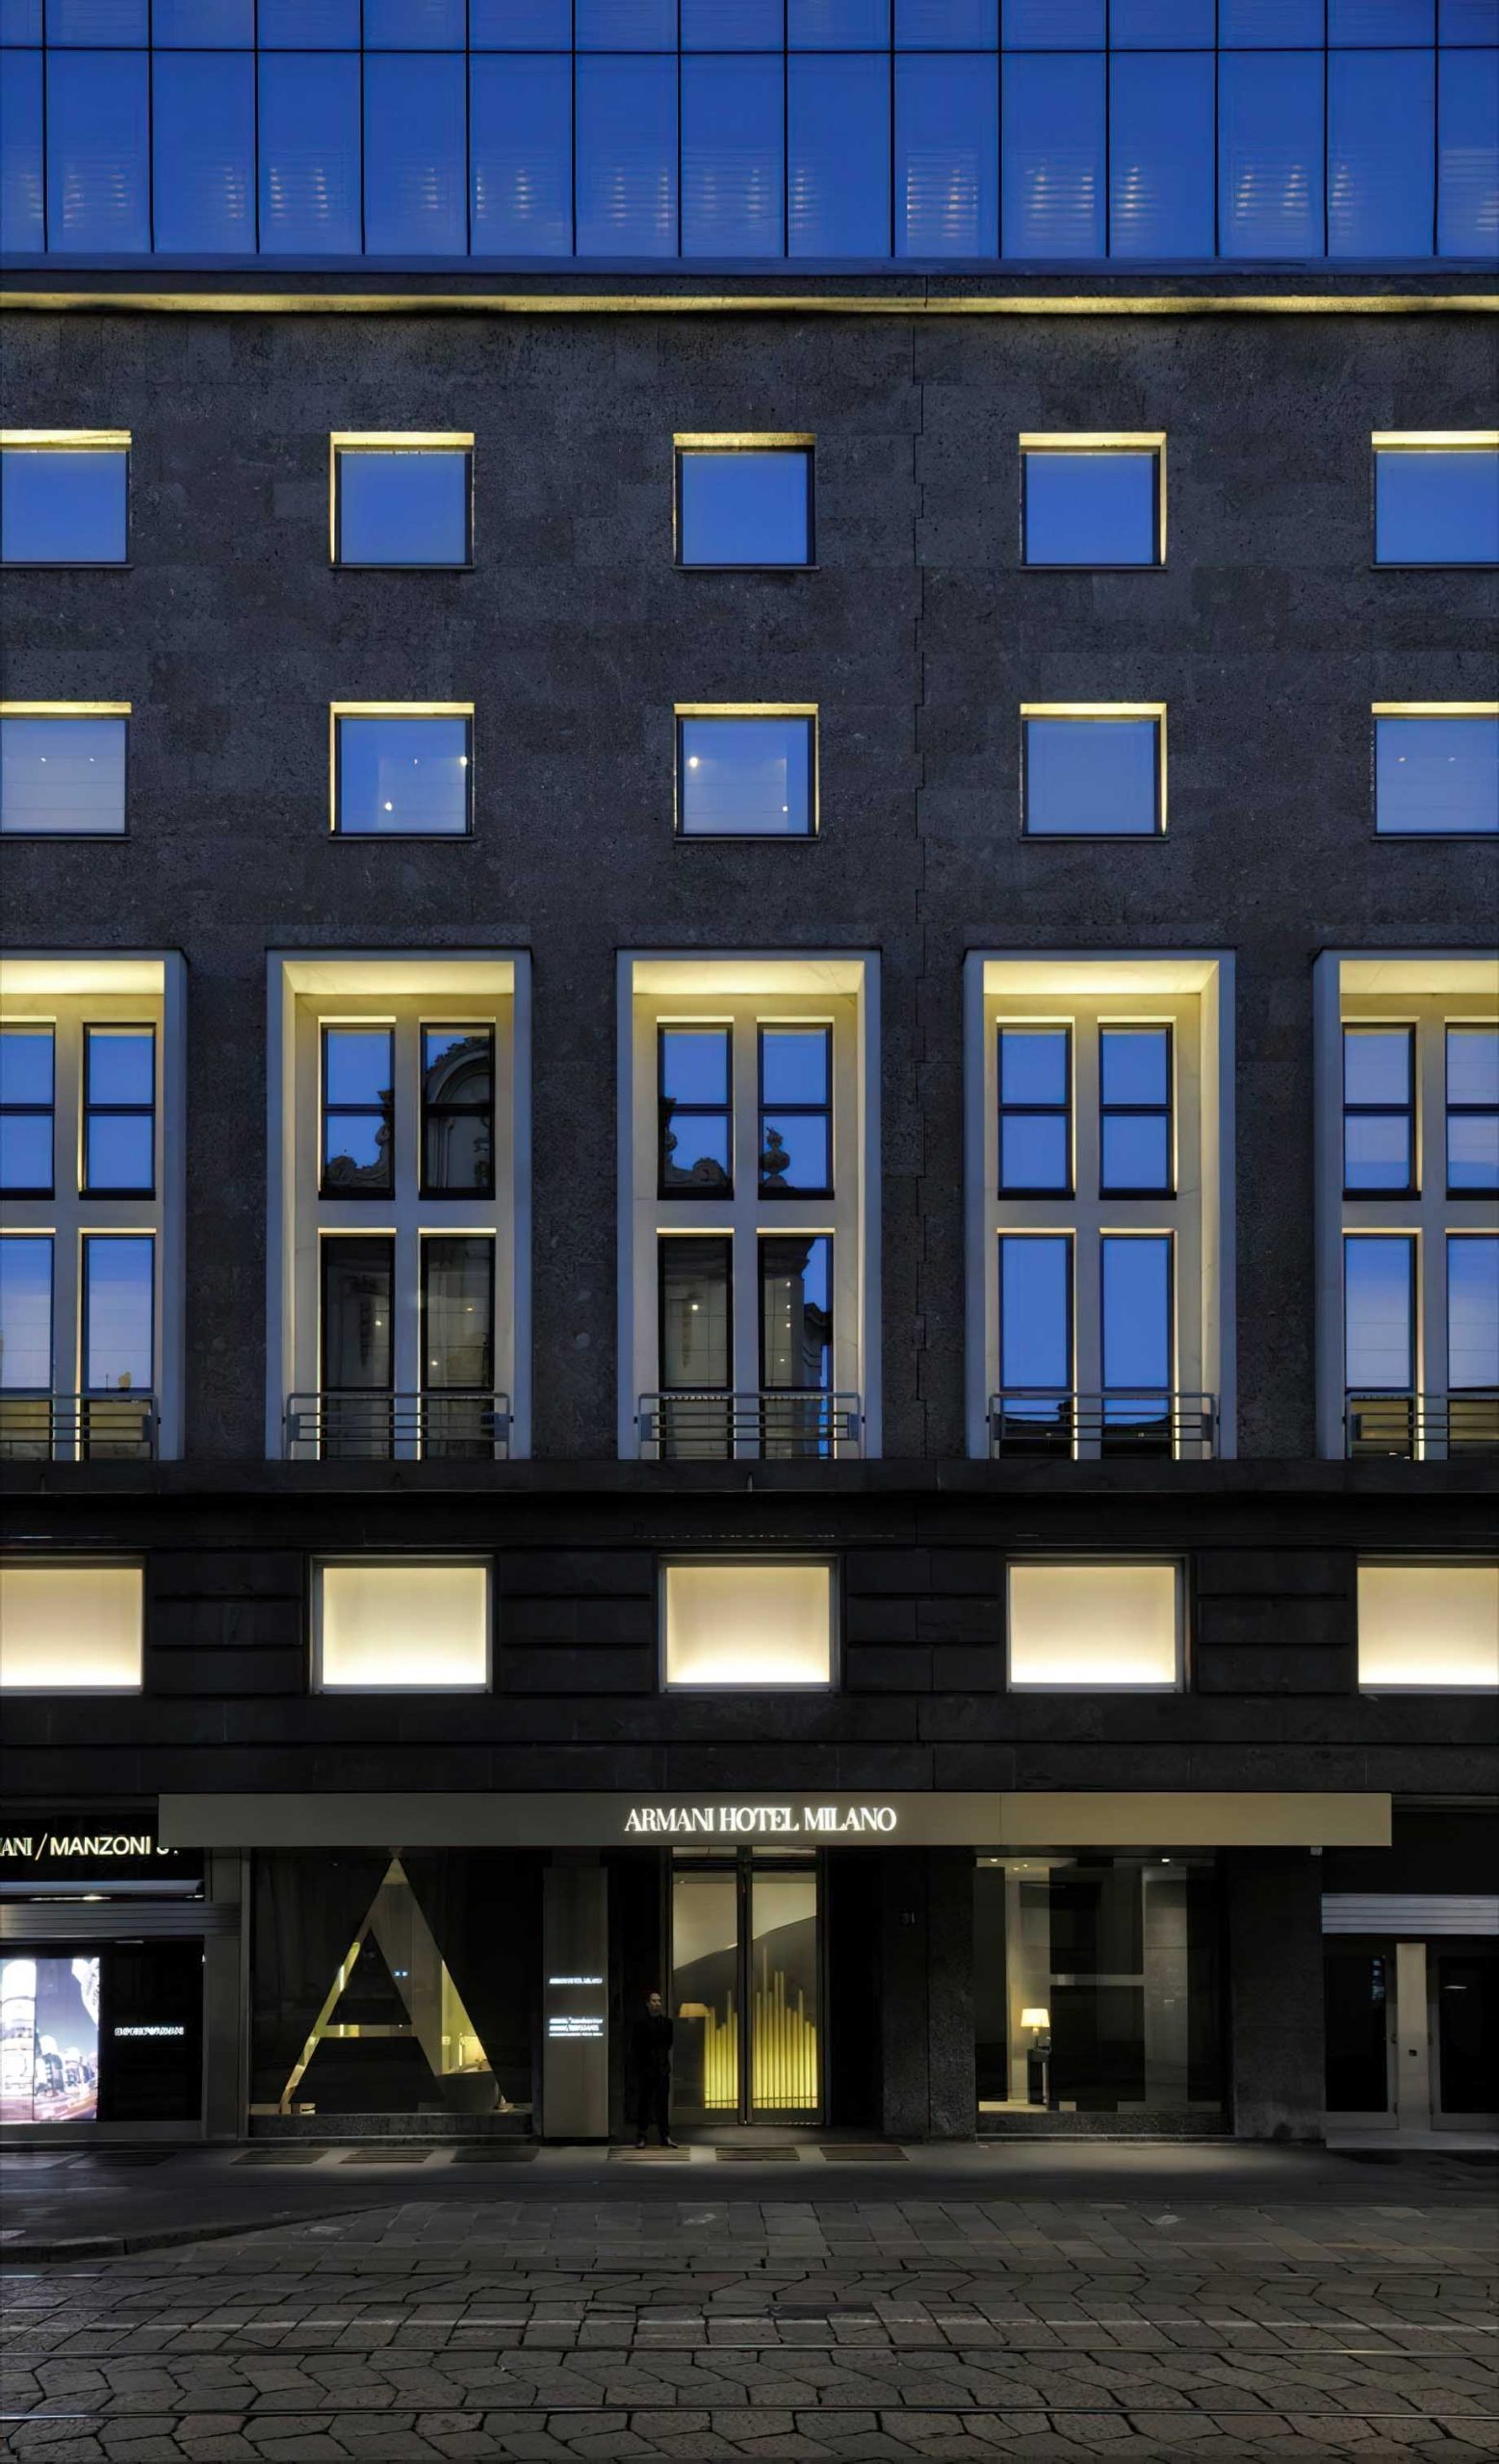 Armani Hotel Milano – Milan, Italy – Front Entrance Exterior at Night